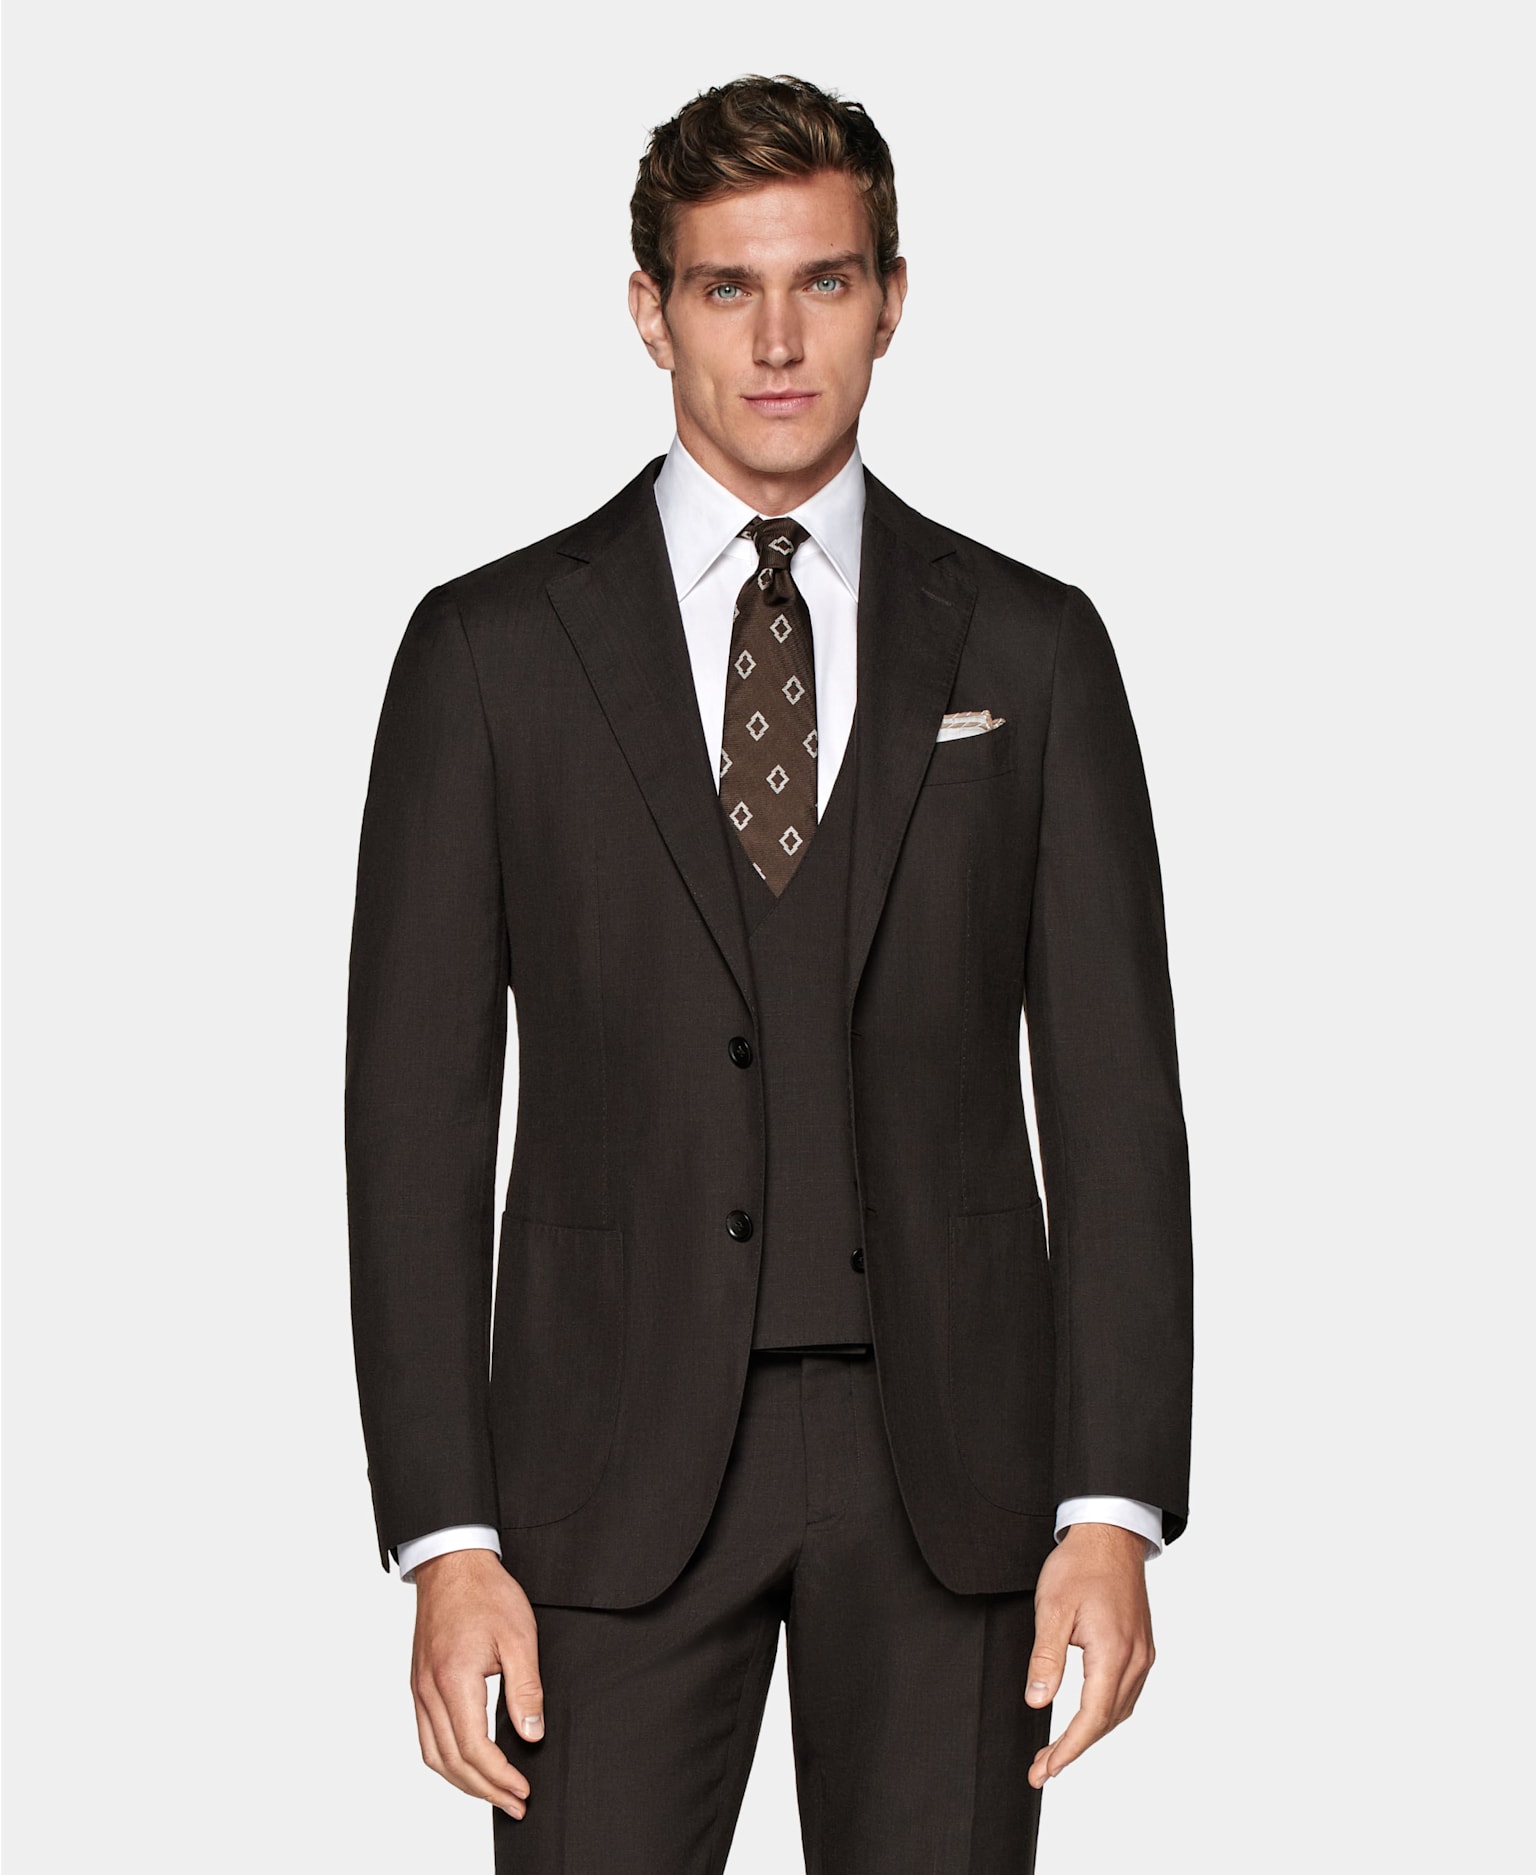 mörkbrun tredelad kostym med vit skjorta, brunmönstrad slips och bröstnäsduk.